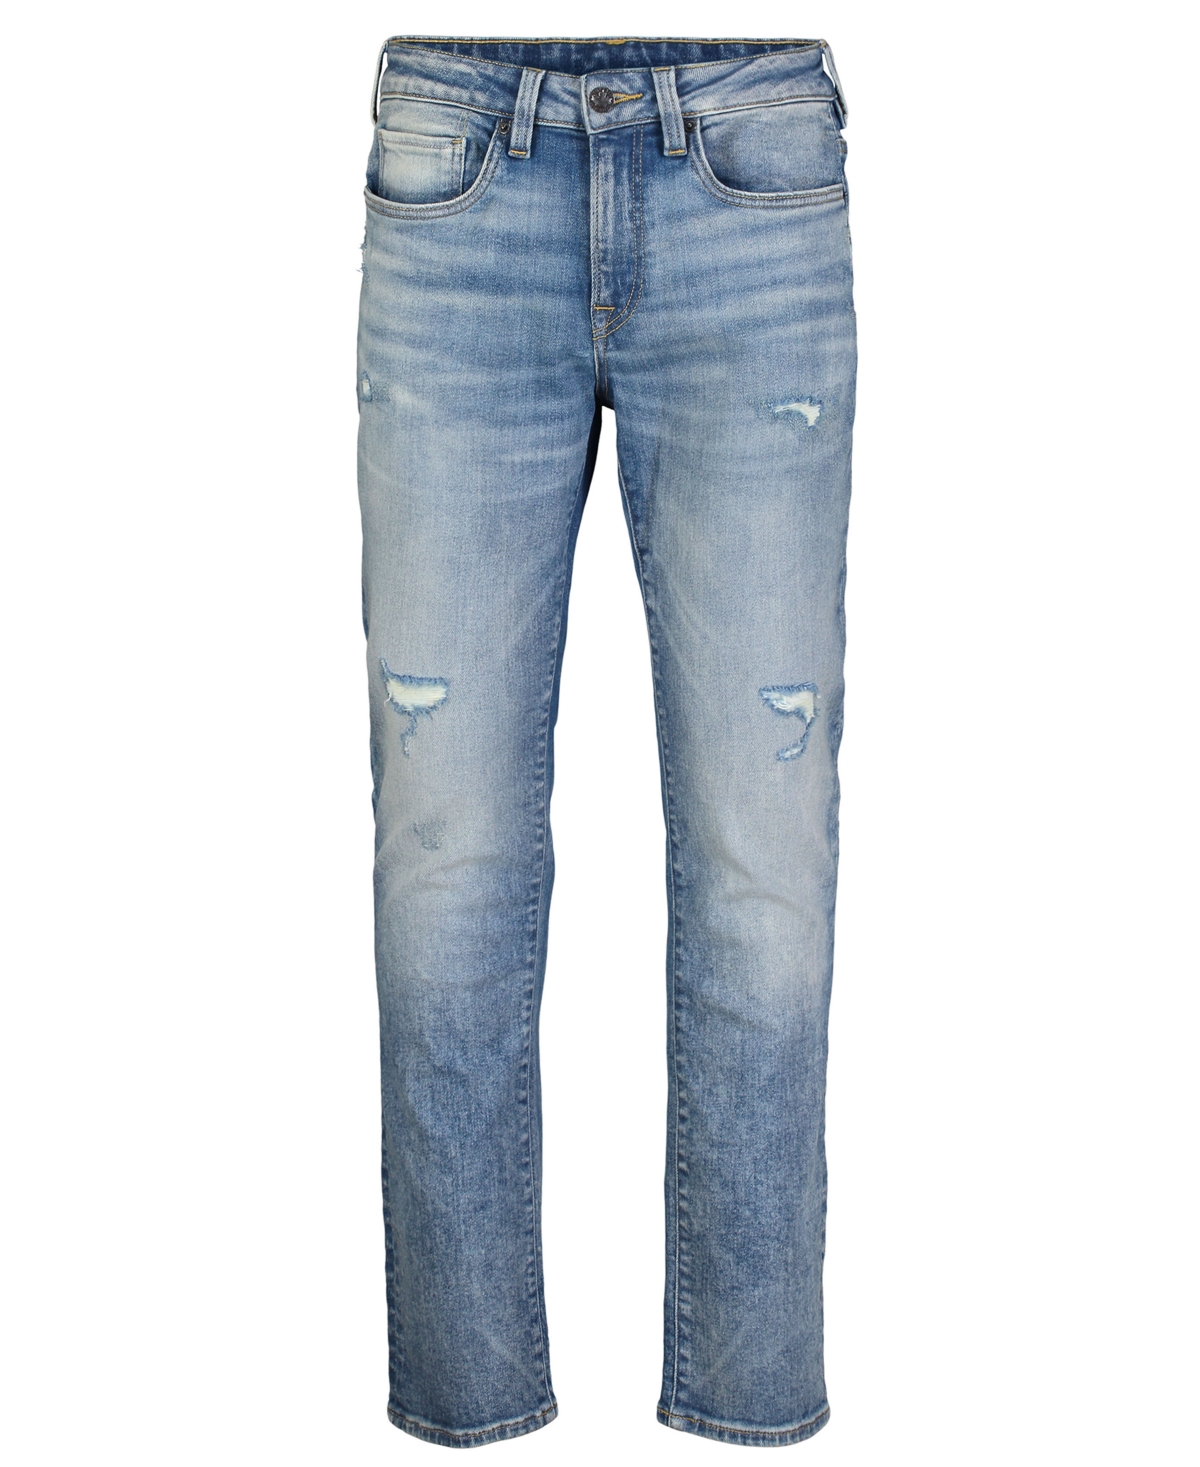 Men's Ash Slim-Fit Stretch Destroyed Jeans - Indigo